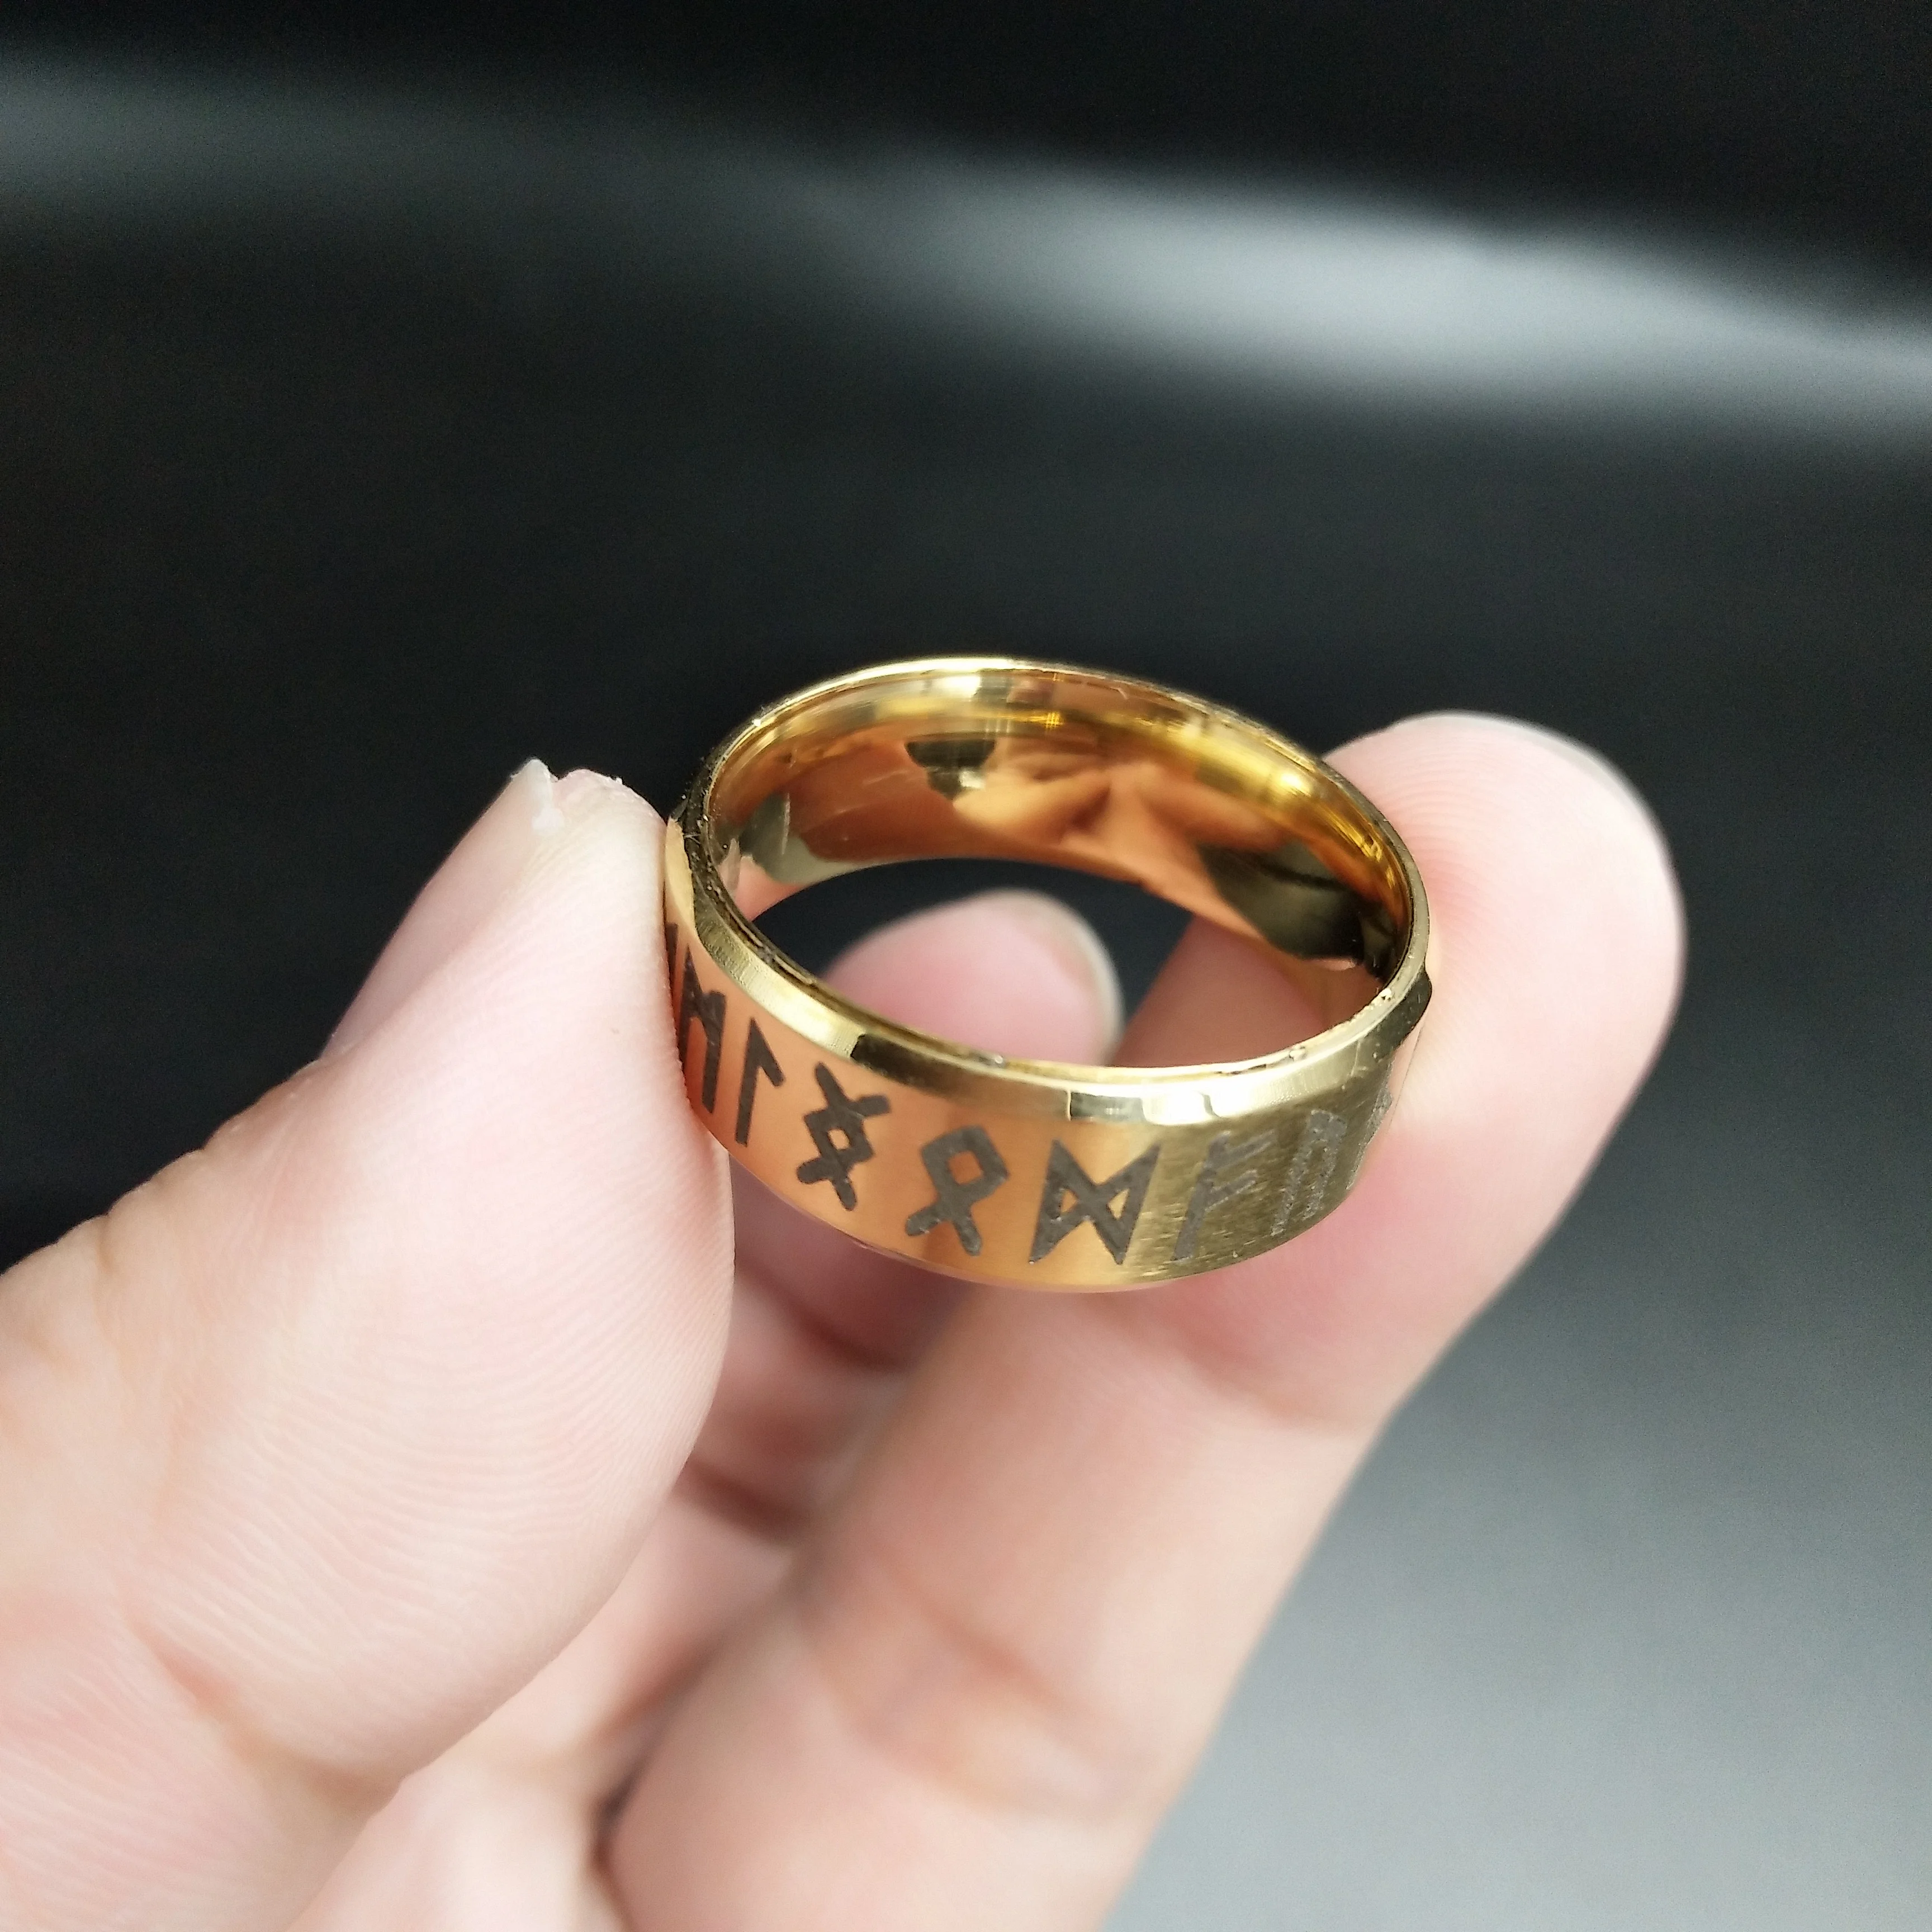 Ностальгия нержавеющая сталь скандинавские рунические украшения руны кольцо викингов мужские кольца женские подарки Wicca колдовство дропшиппинг